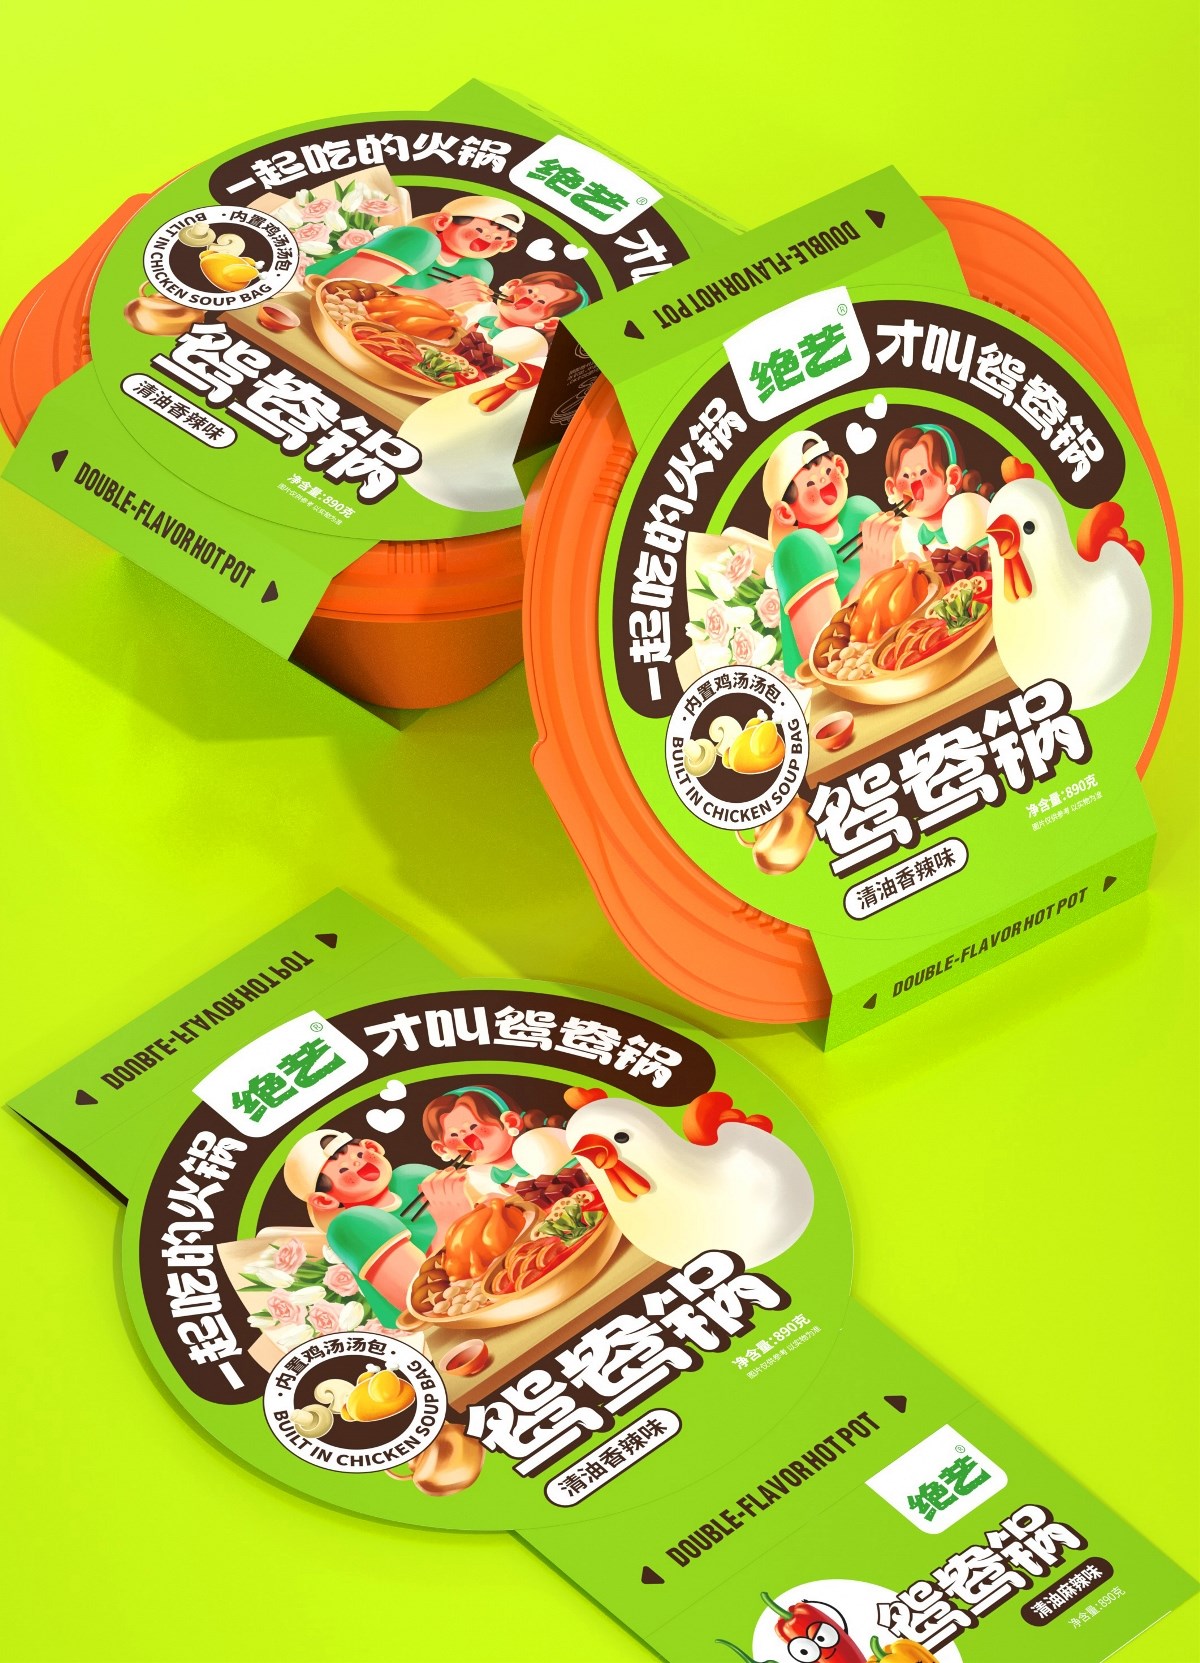 尚智×绝艺 | 自热火锅系列包装设计 | 食品包装设计